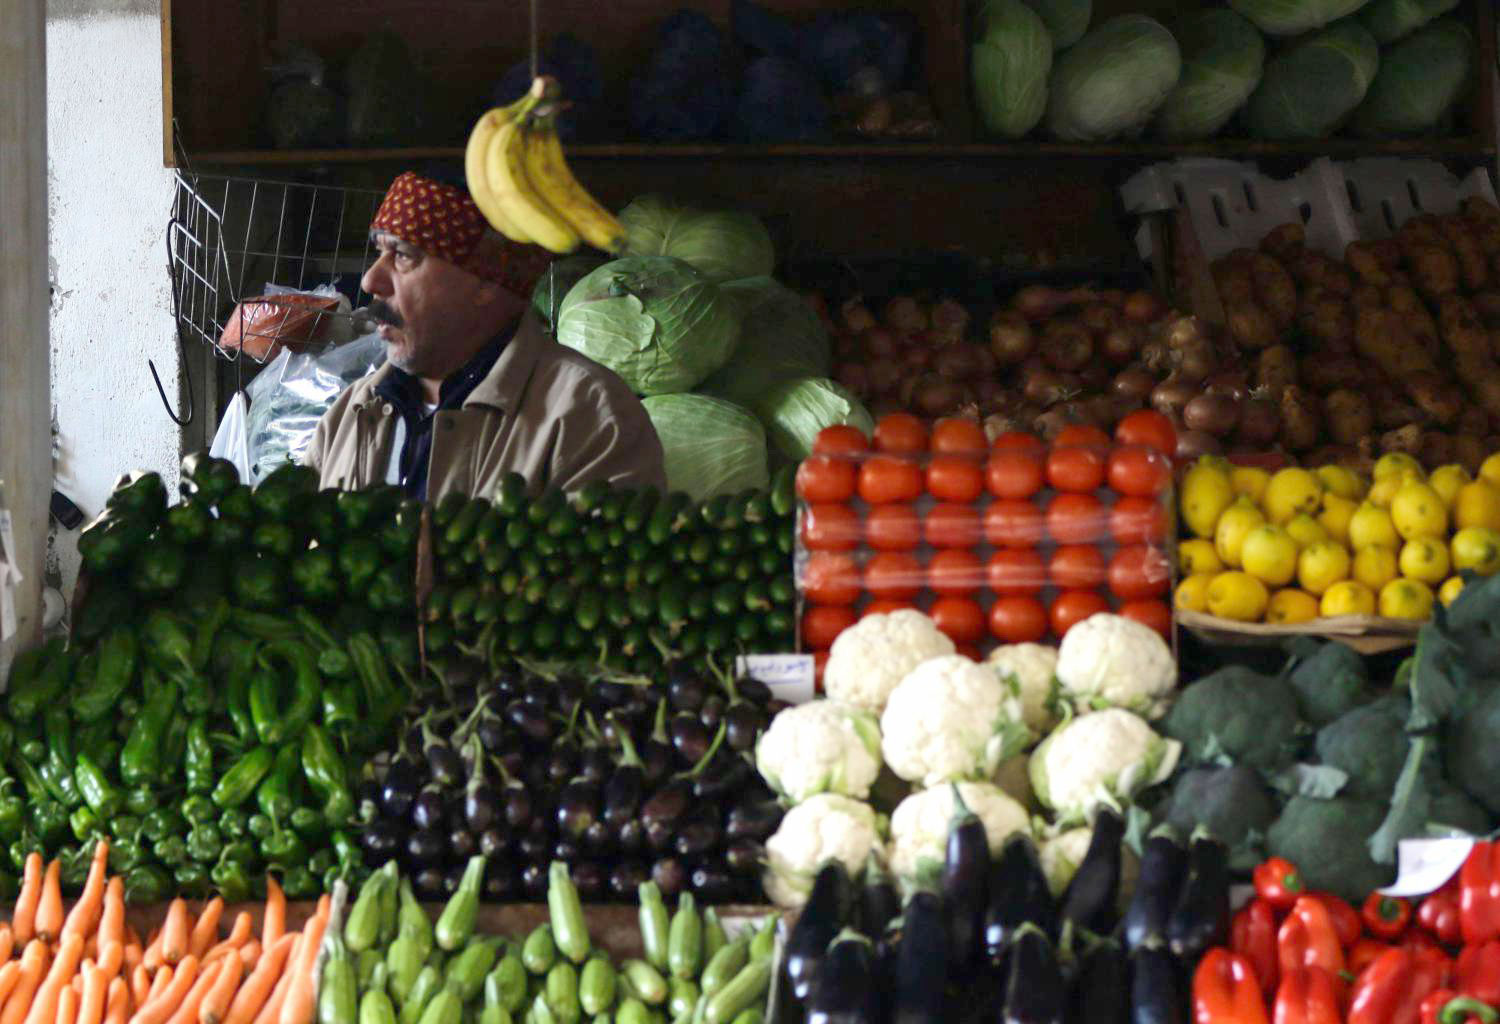 لجنة سوق الهال بدمشق : لن تنخفض أسعار الخضار والفواكه قبل انتهاء فترة الأعياد